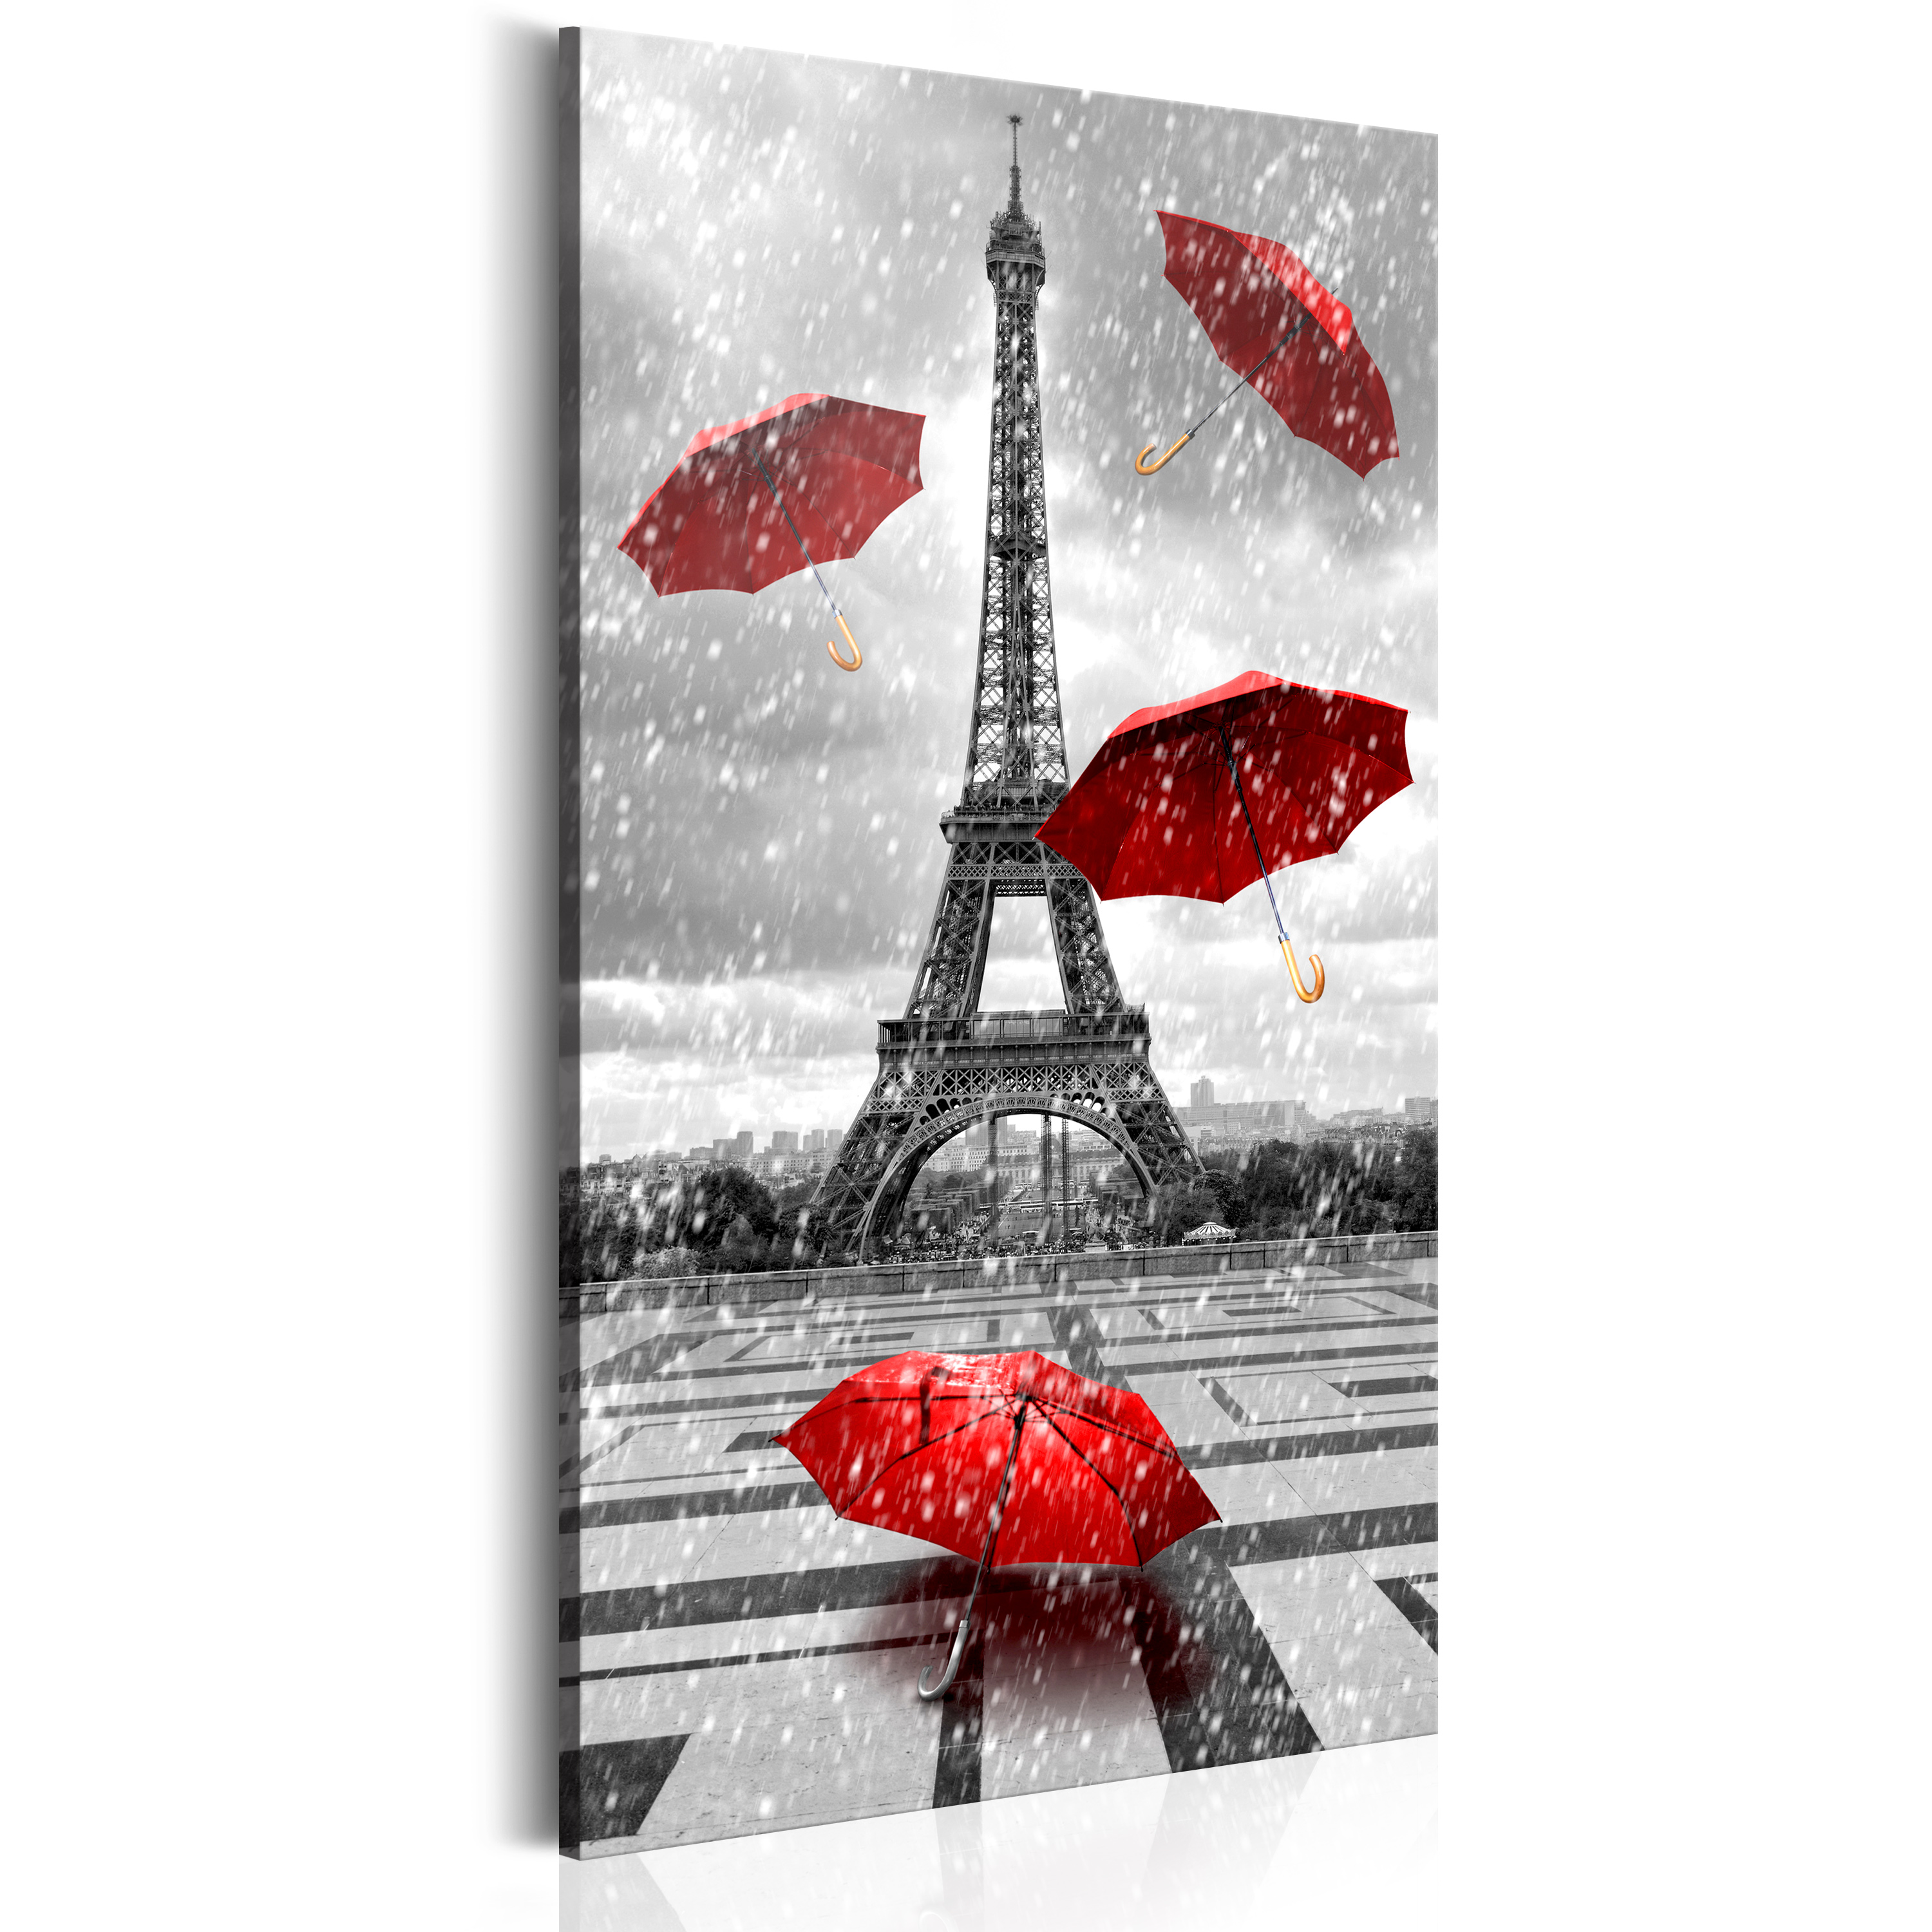 Obraz - Paris: Red Umbrellas